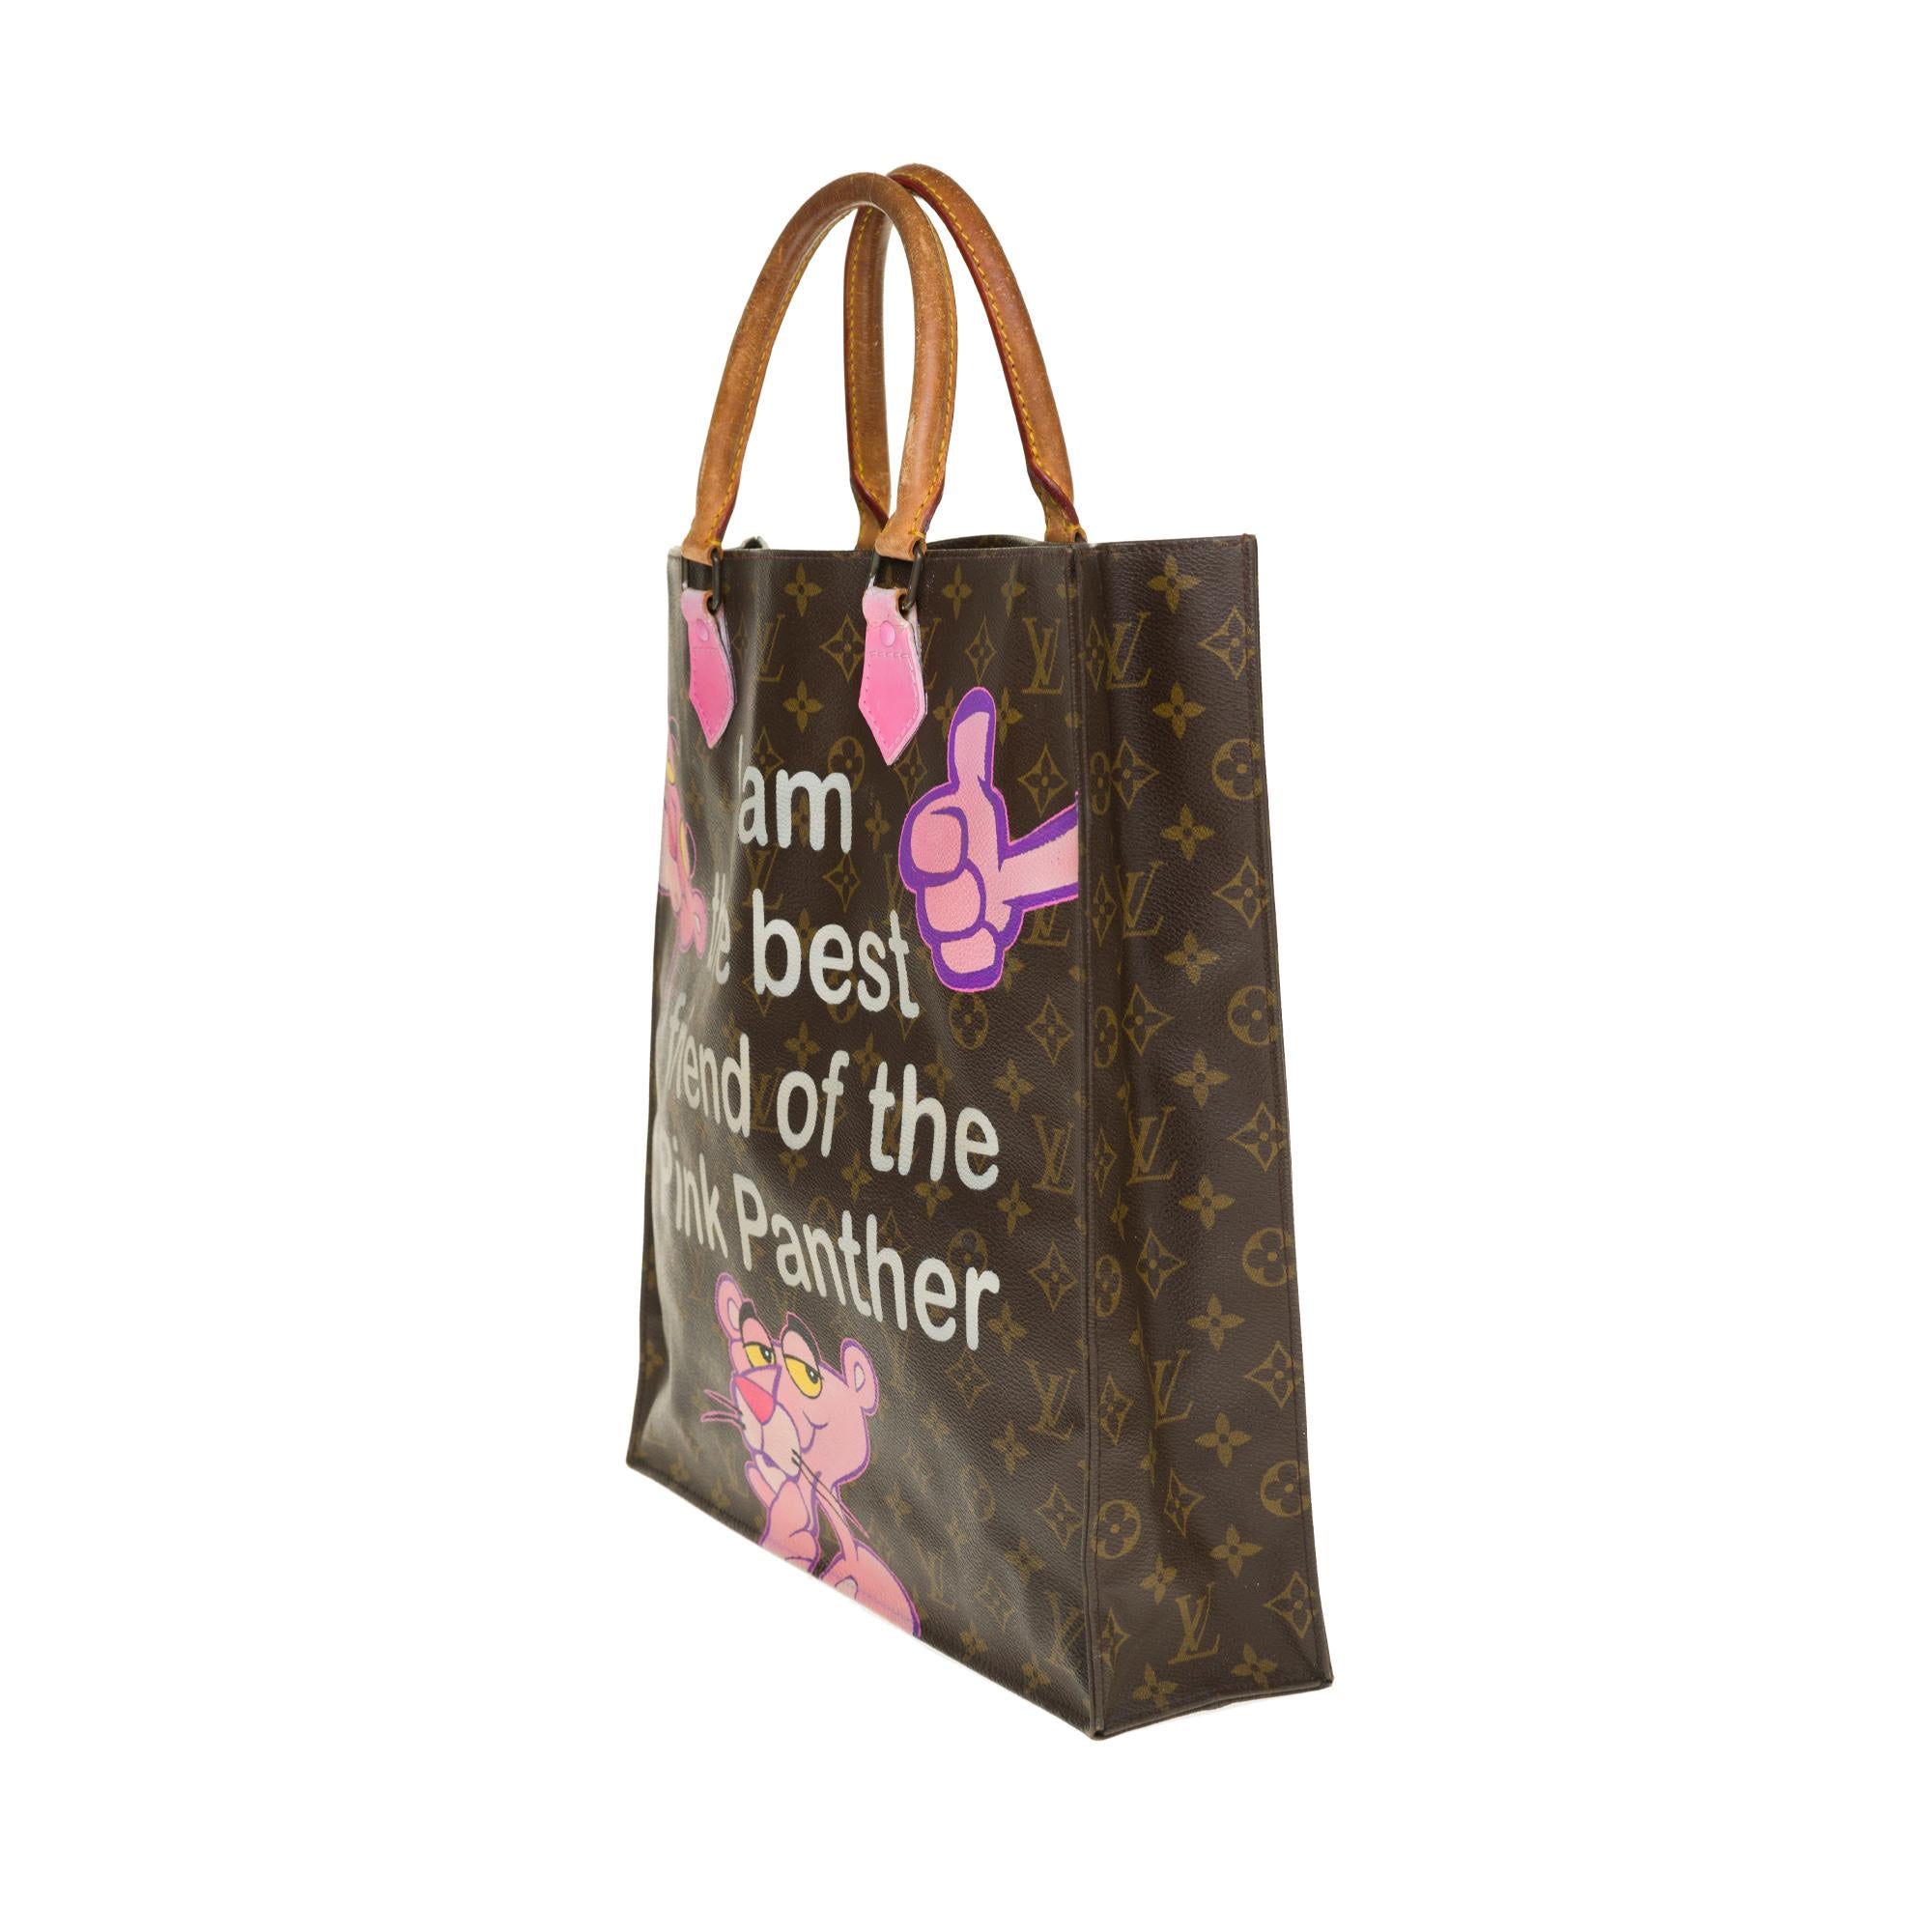 pink panther purse